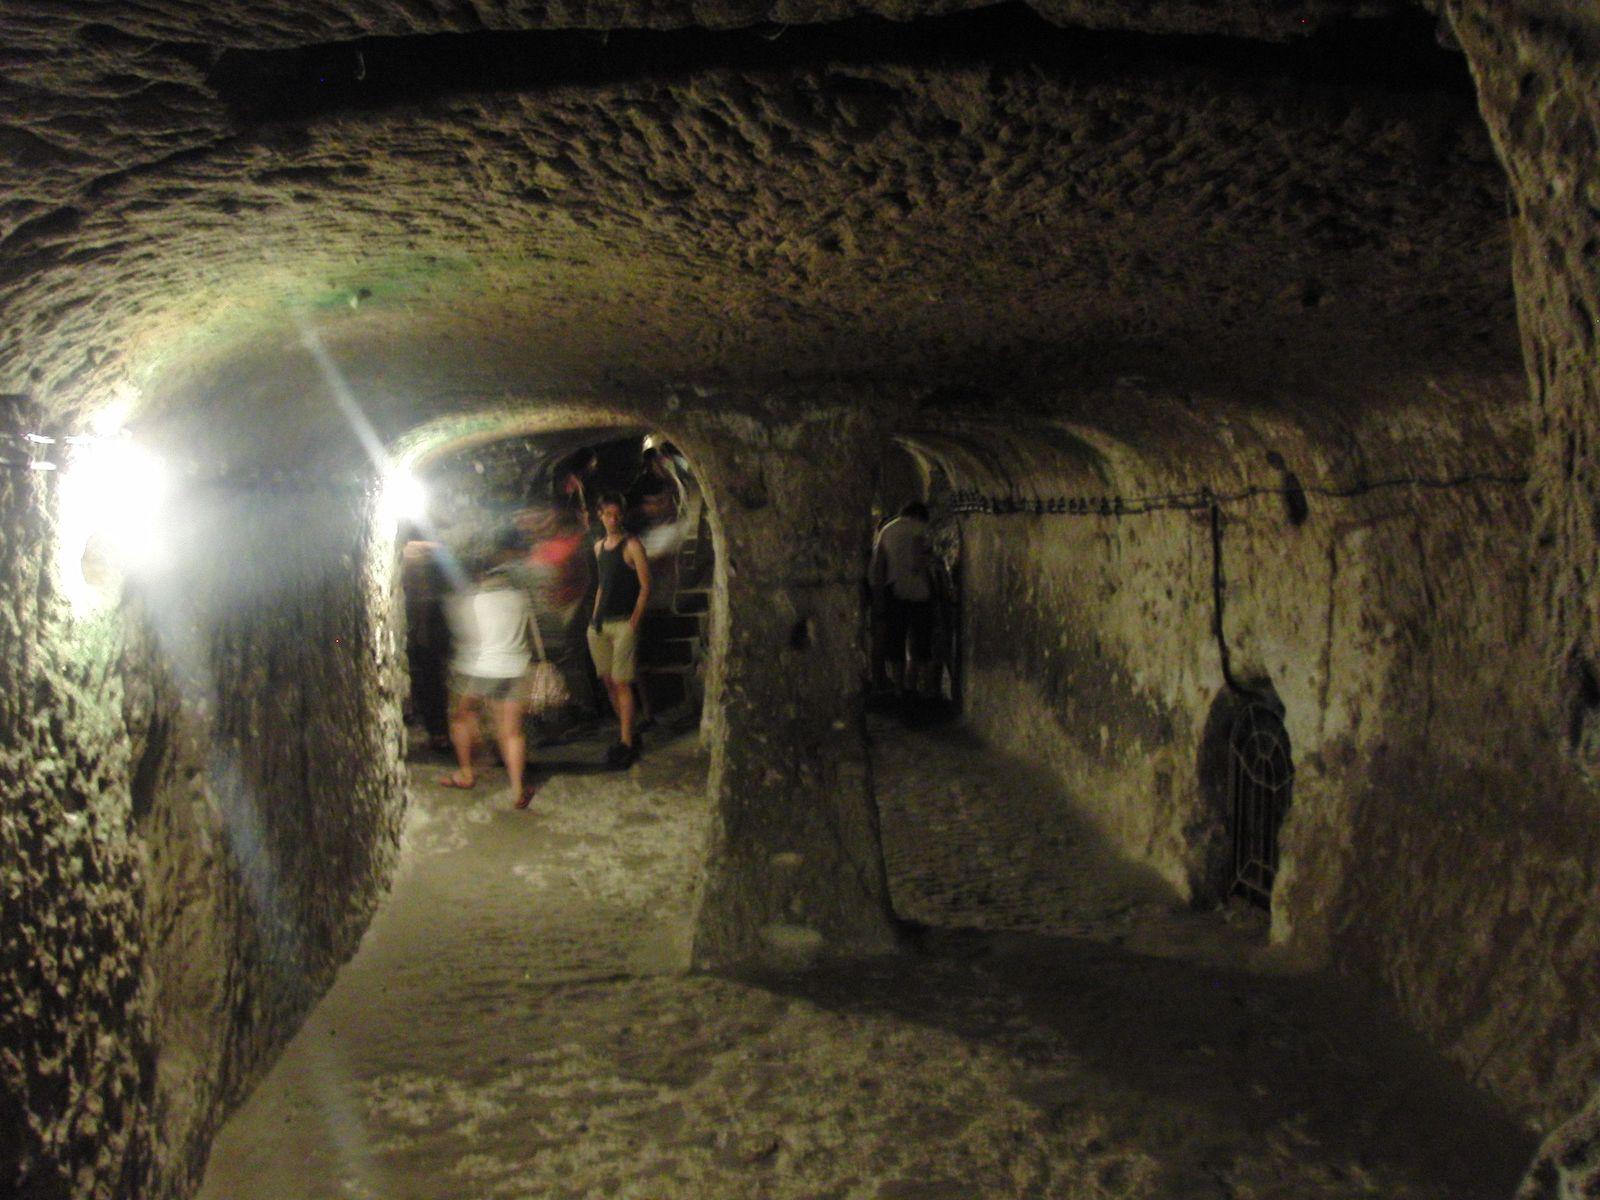 Chamber in the underground town of Derinkuyu, Cappadocia, Turkey